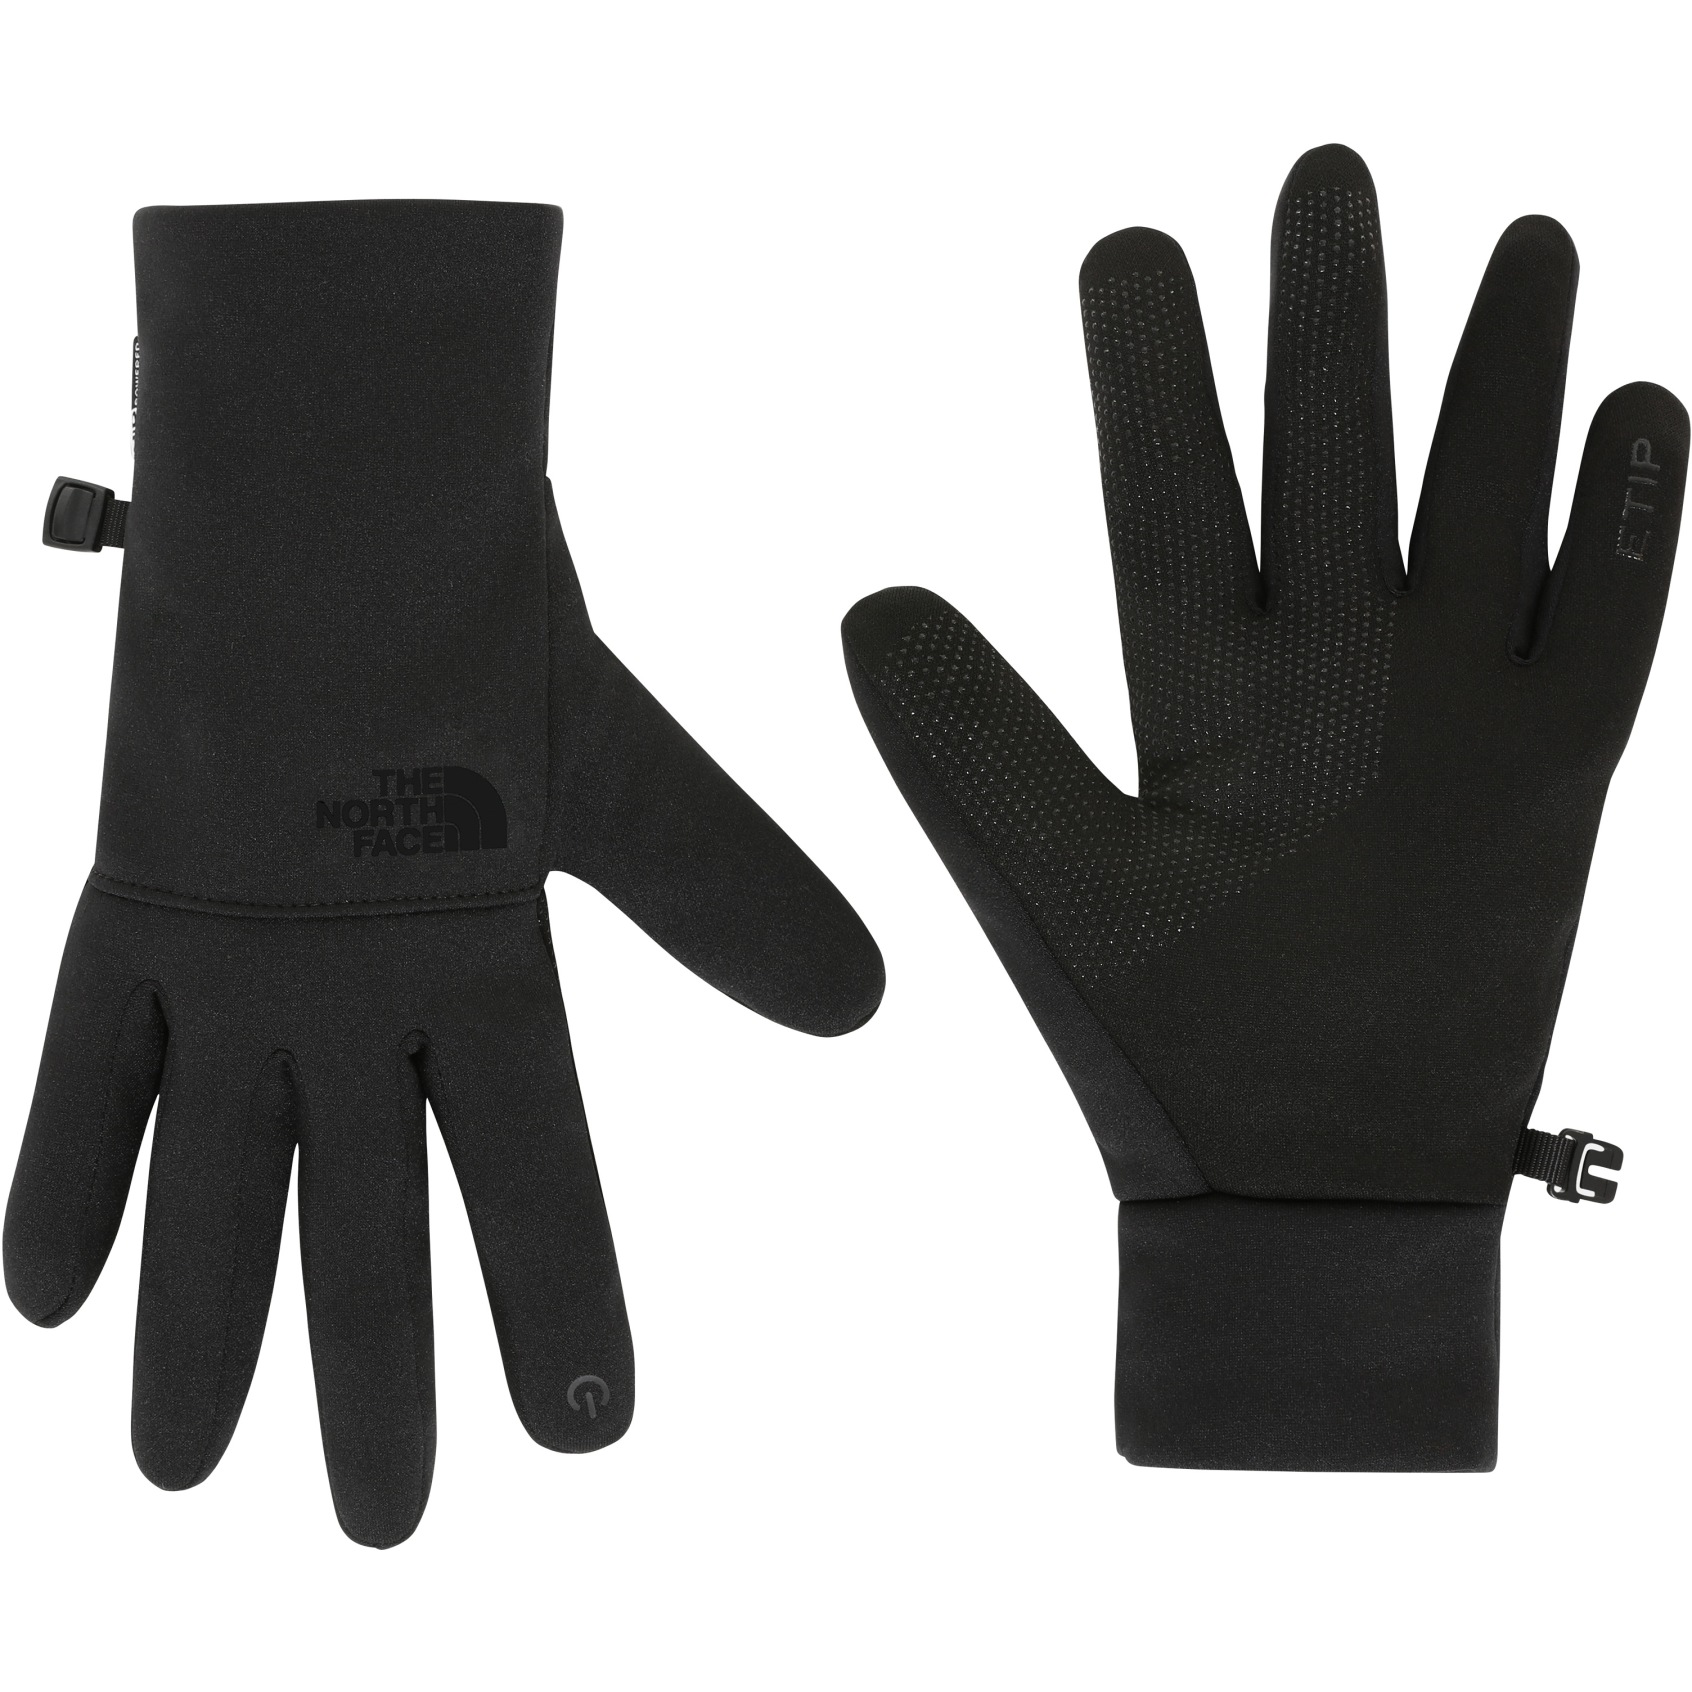 Produktbild von The North Face Recycelte Etip Handschuhe - TNF Black